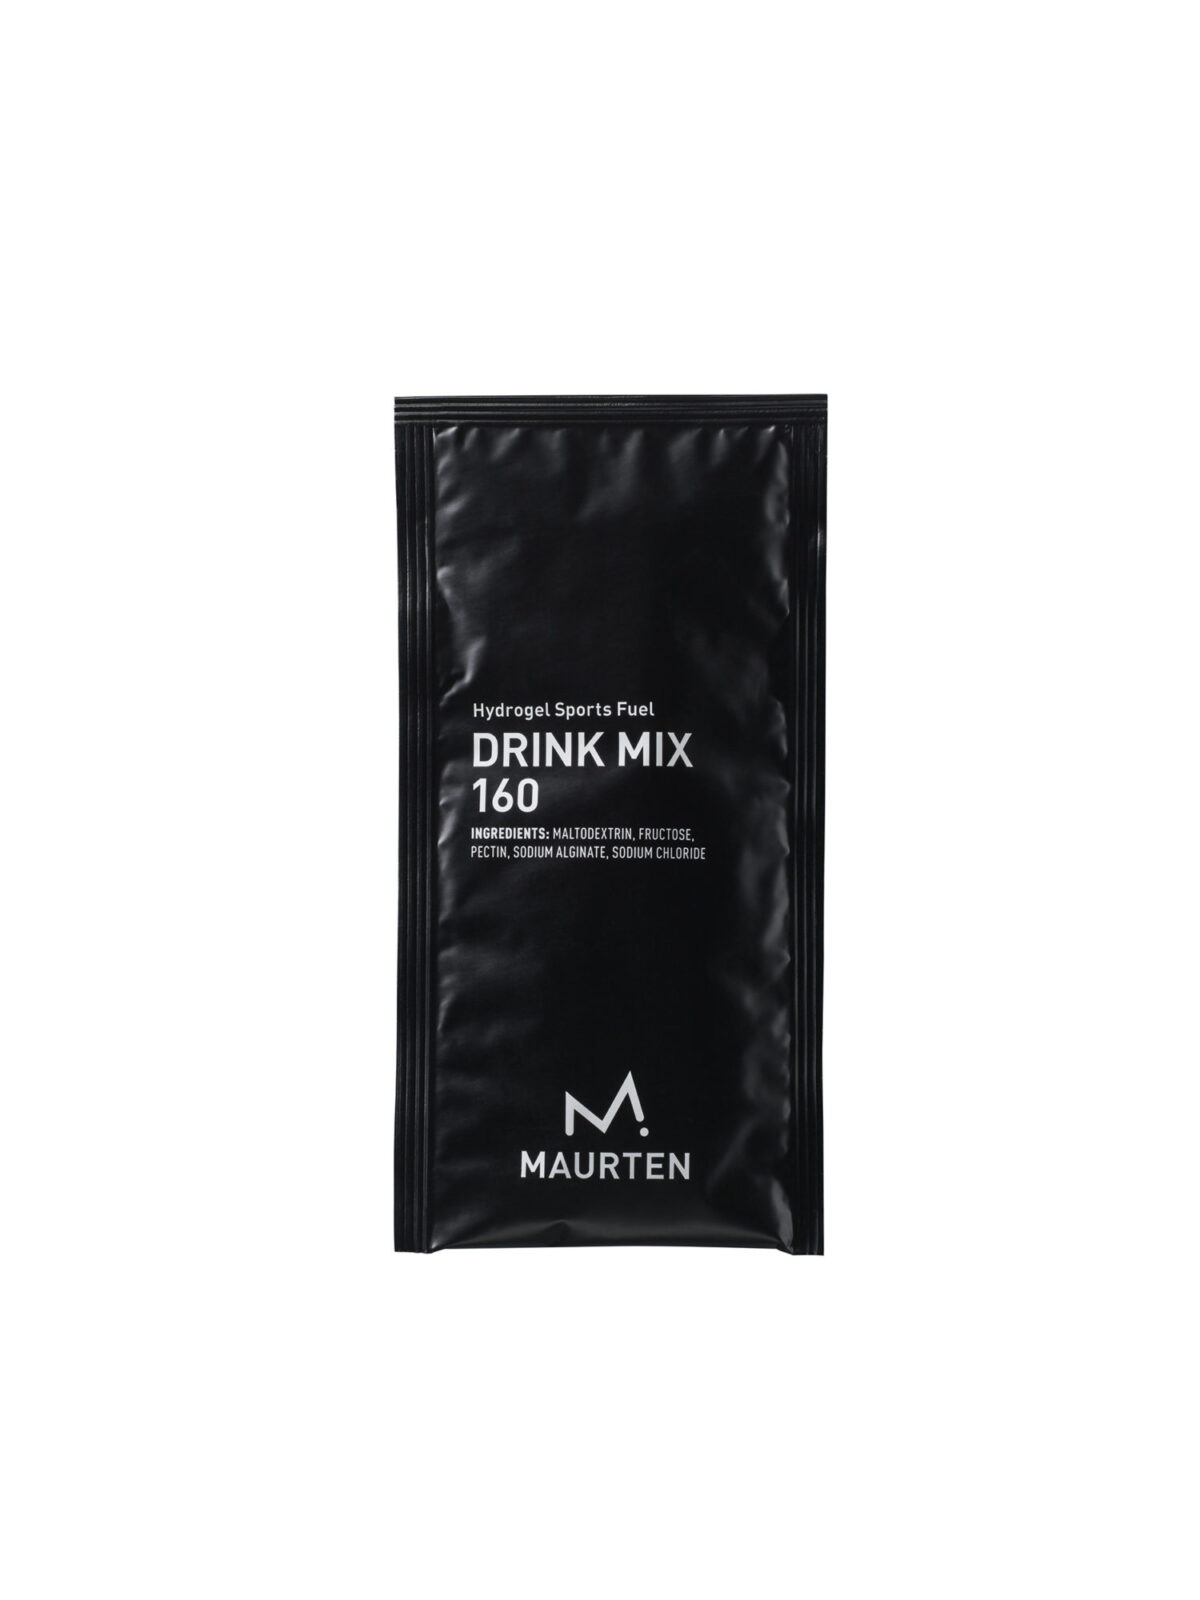 Maurten Drink Mix 160, finns även i hel kartong om 18 st